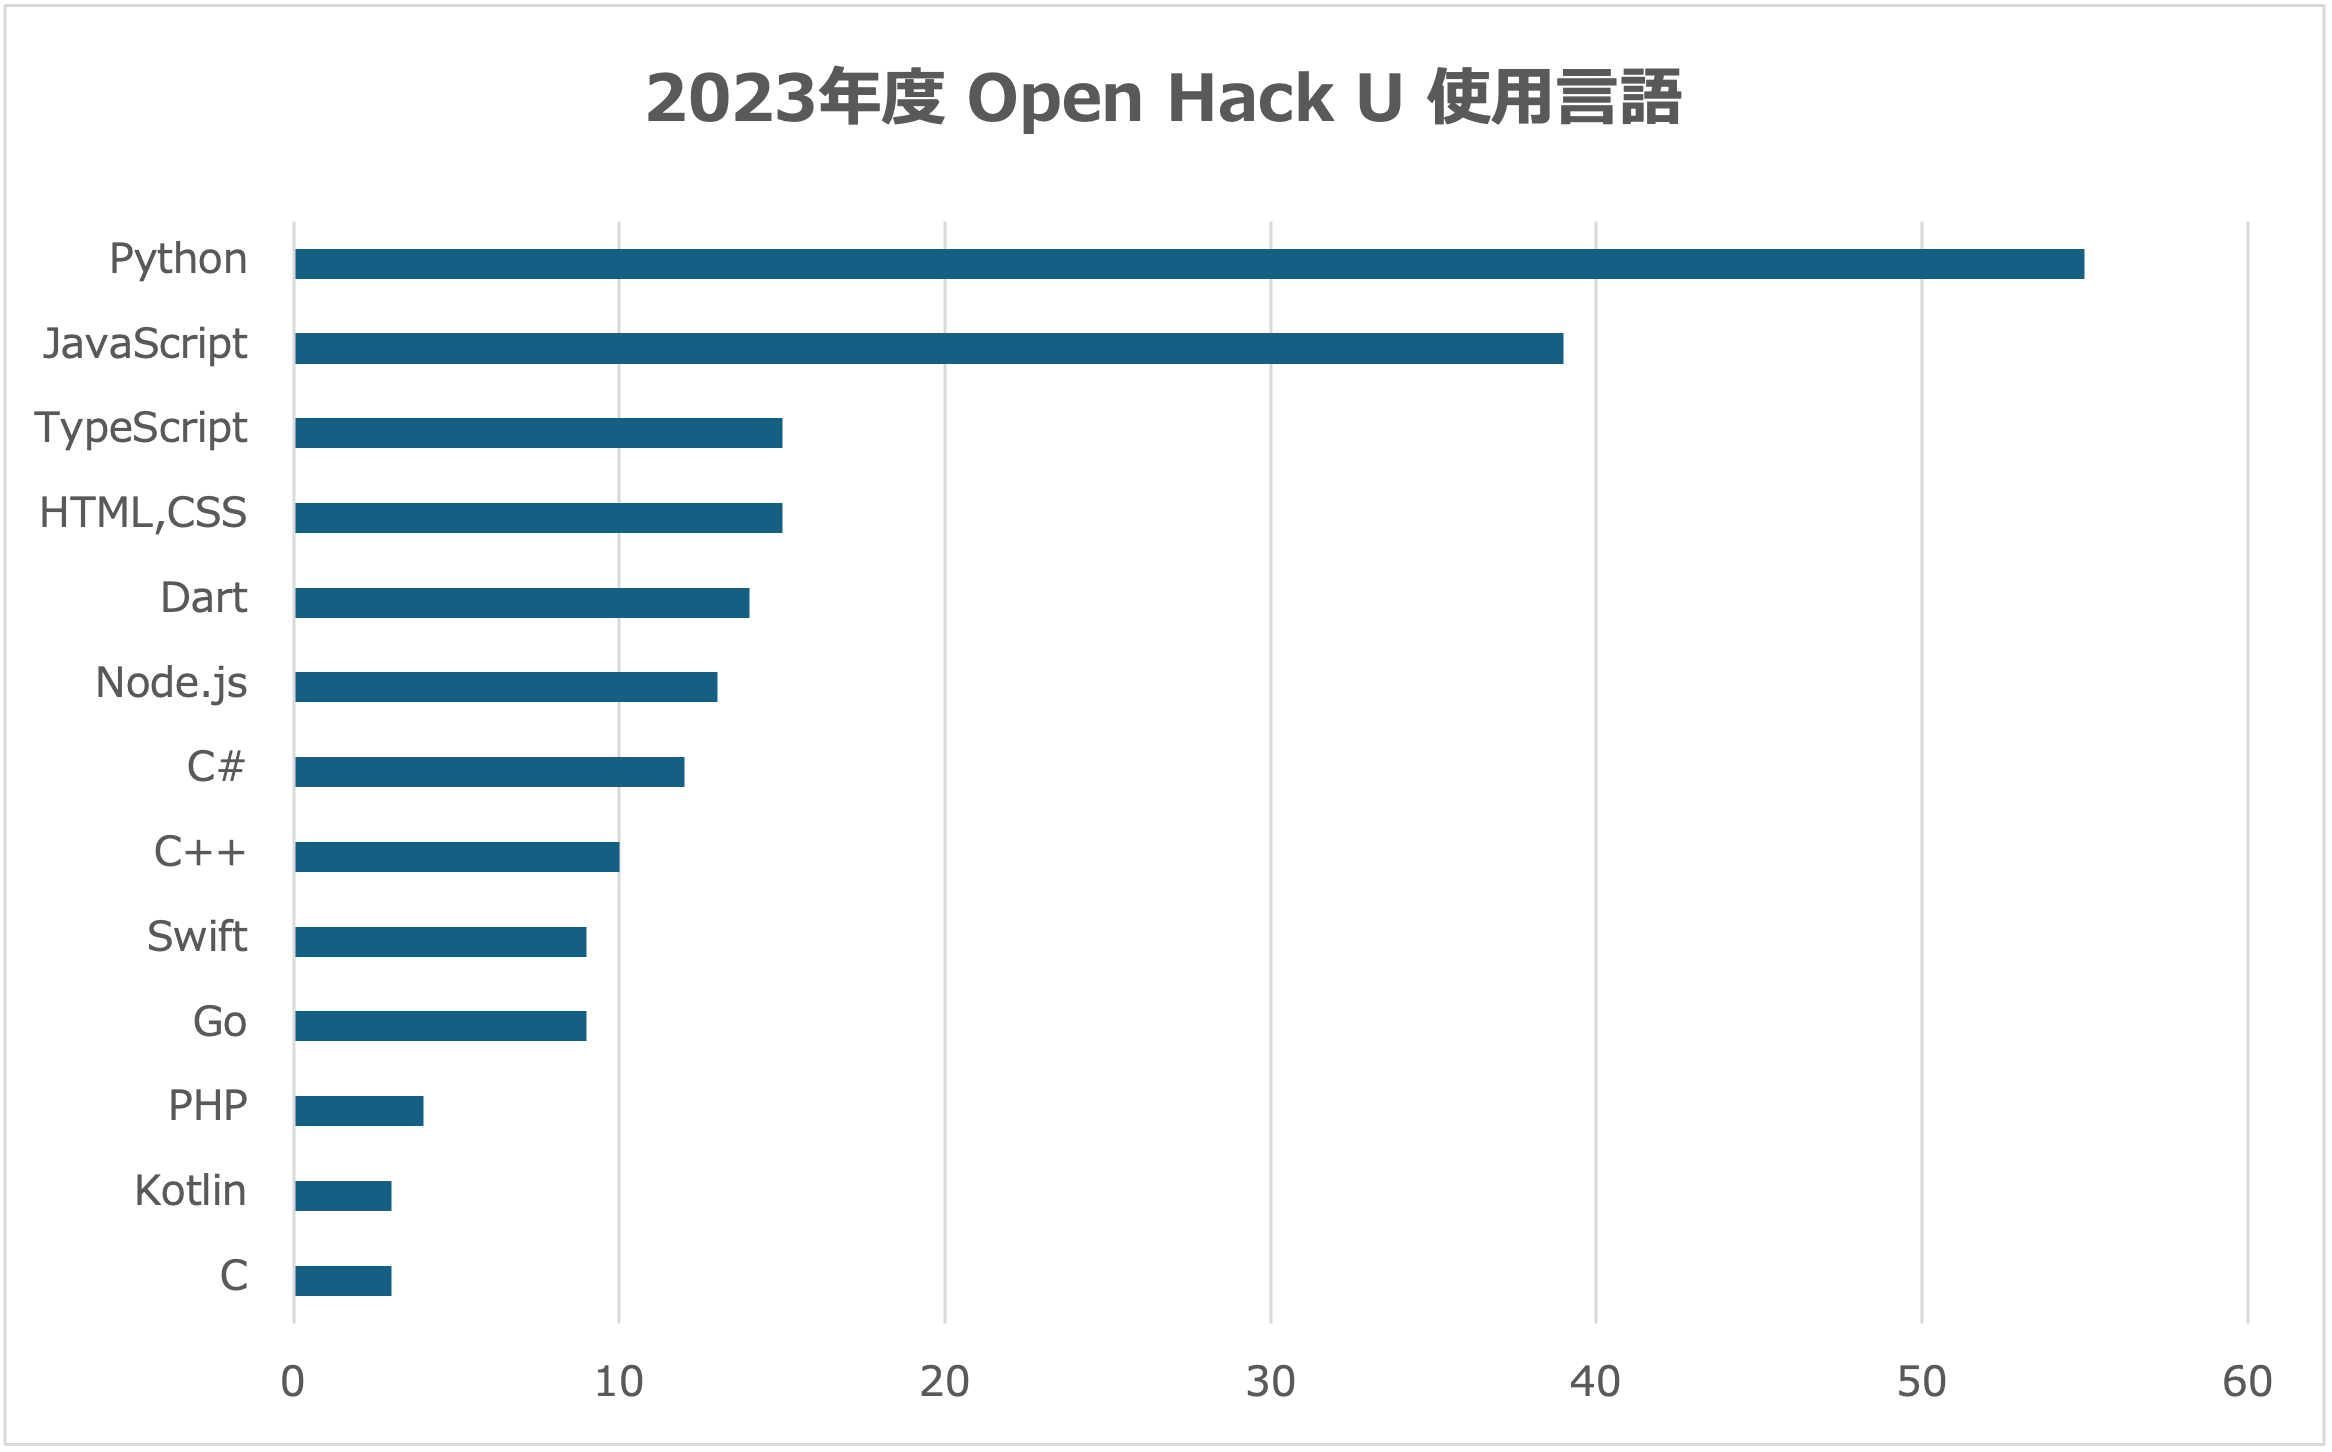 2023年度 Open Hack U 使用言語1